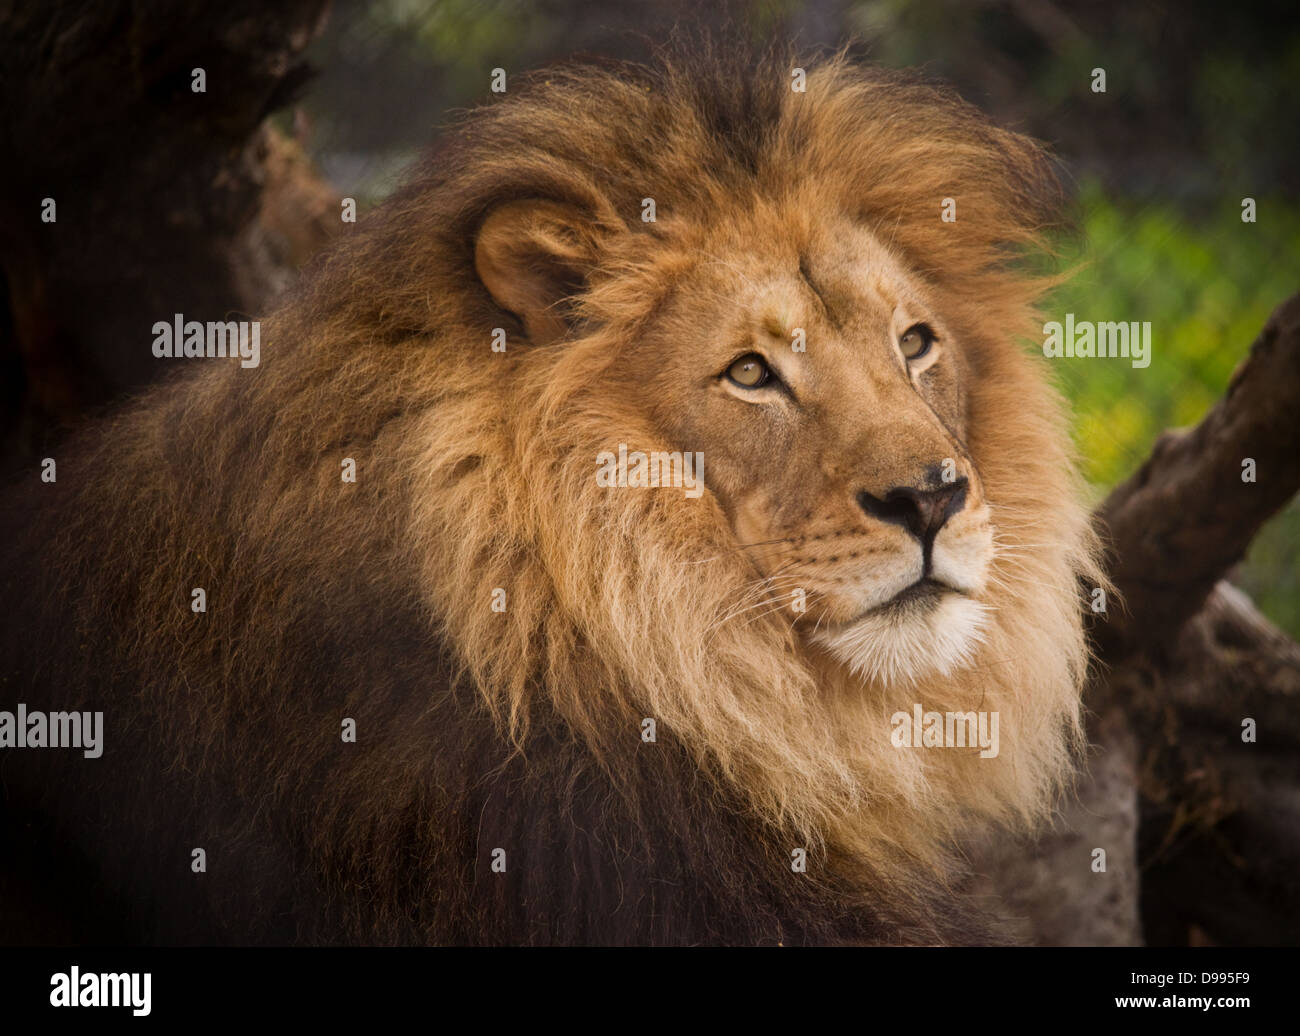 Près d'un lion mâle avec une grande crinière, dans un zoo. Banque D'Images